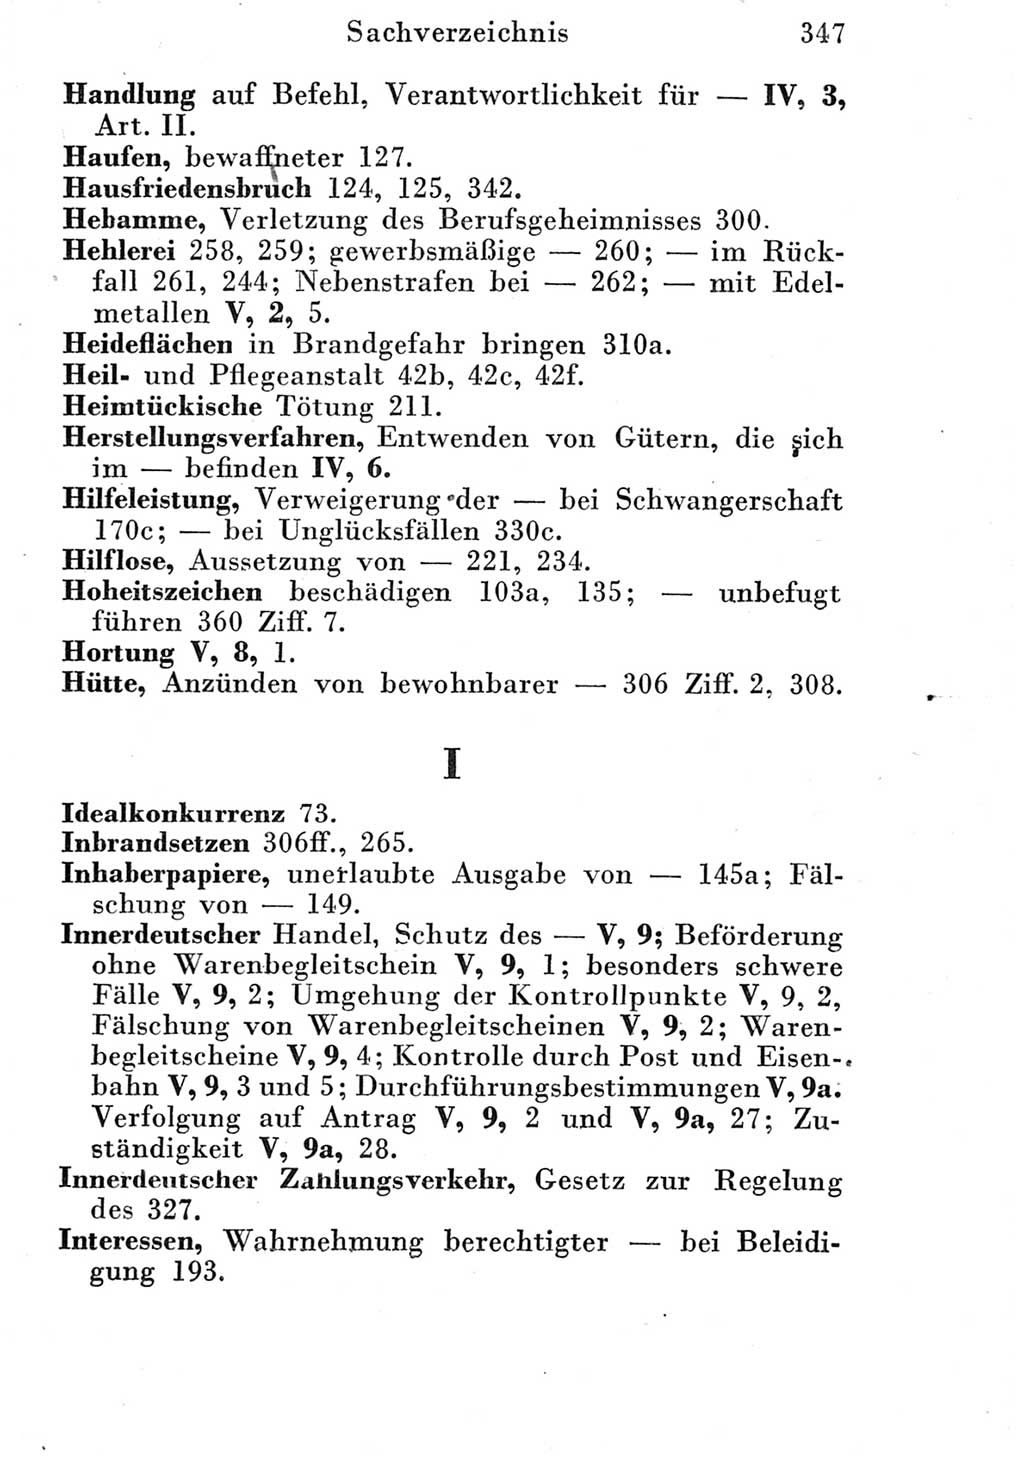 Strafgesetzbuch (StGB) und andere Strafgesetze [Deutsche Demokratische Republik (DDR)] 1951, Seite 347 (StGB Strafges. DDR 1951, S. 347)